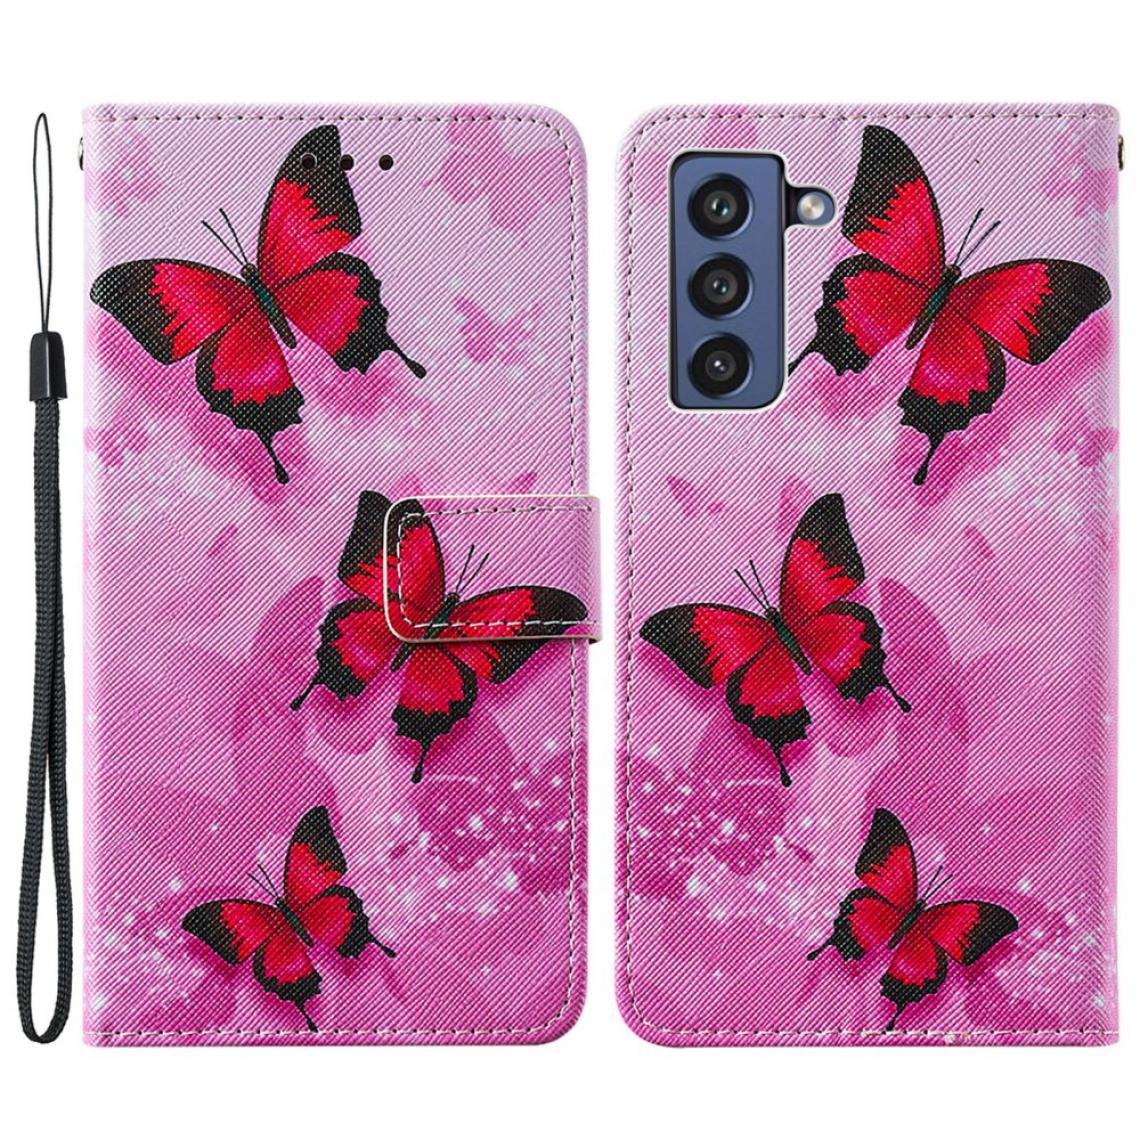 Other - Etui en PU Impression de motifs de texture croisée avec support Papillon rose pour votre Samsung Galaxy S21 FE/S21 Fan Edition - Coque, étui smartphone